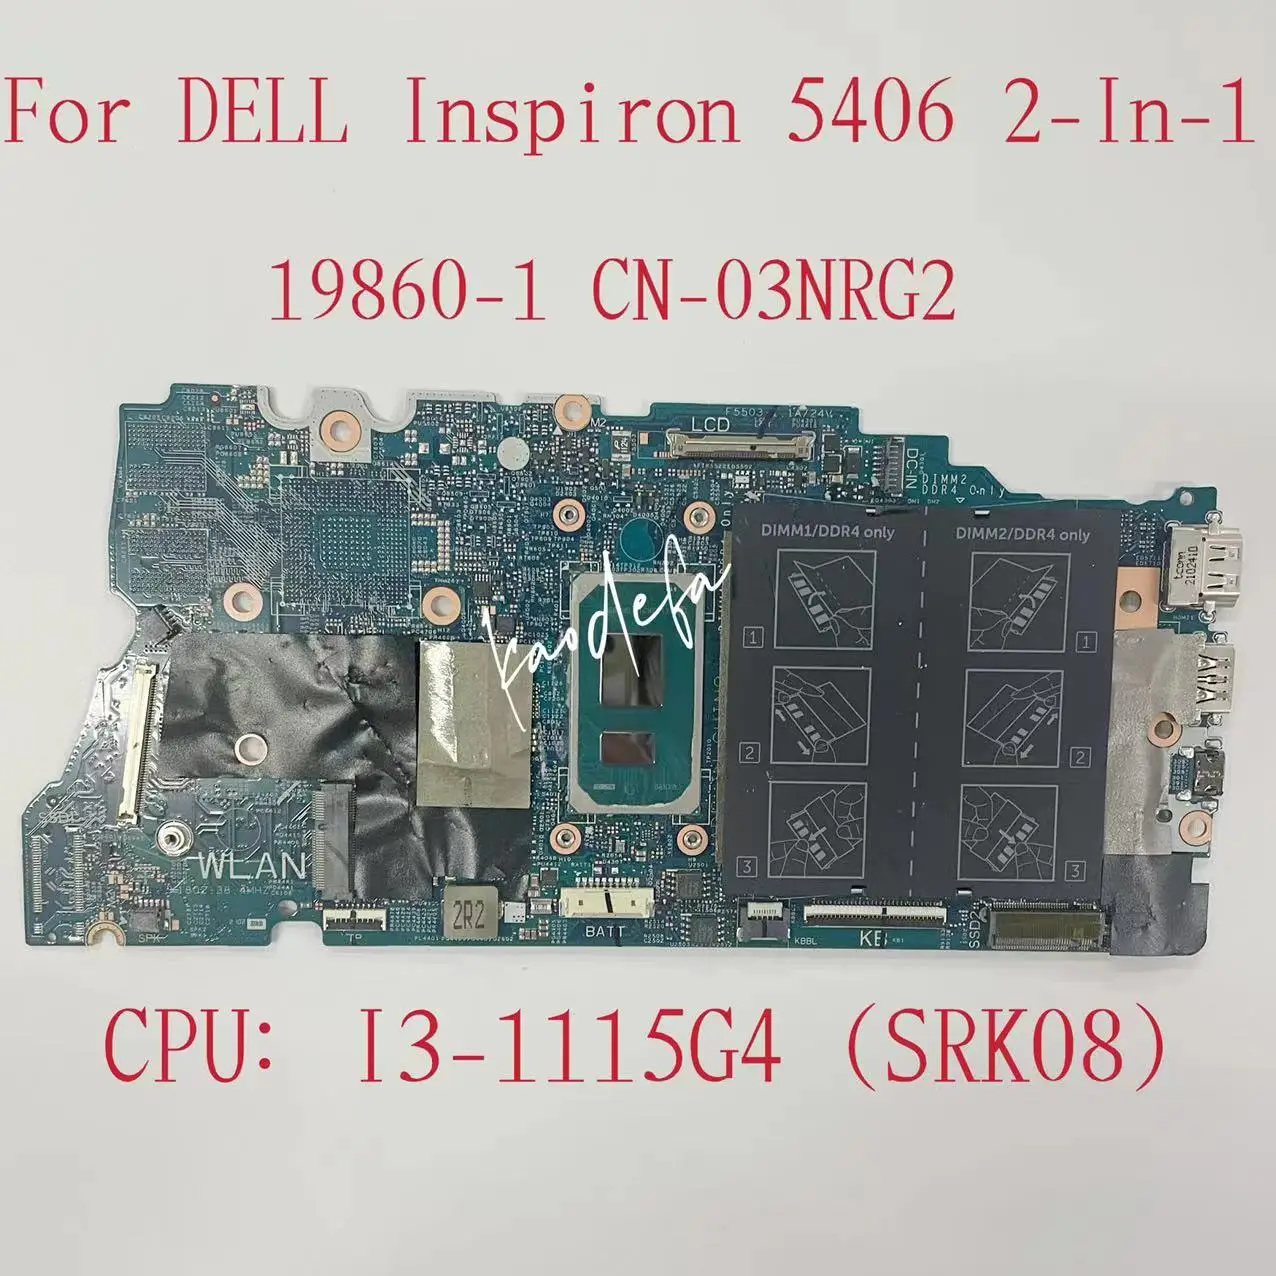 19860-1 základní Deska Pro Dell Inspiron 5406 2-V-1 Notebooku základní Deska CPU: Intel Core I3-1115G4 SRK08 DDR4 KN-03NRG2 03NRG2 3NRG2